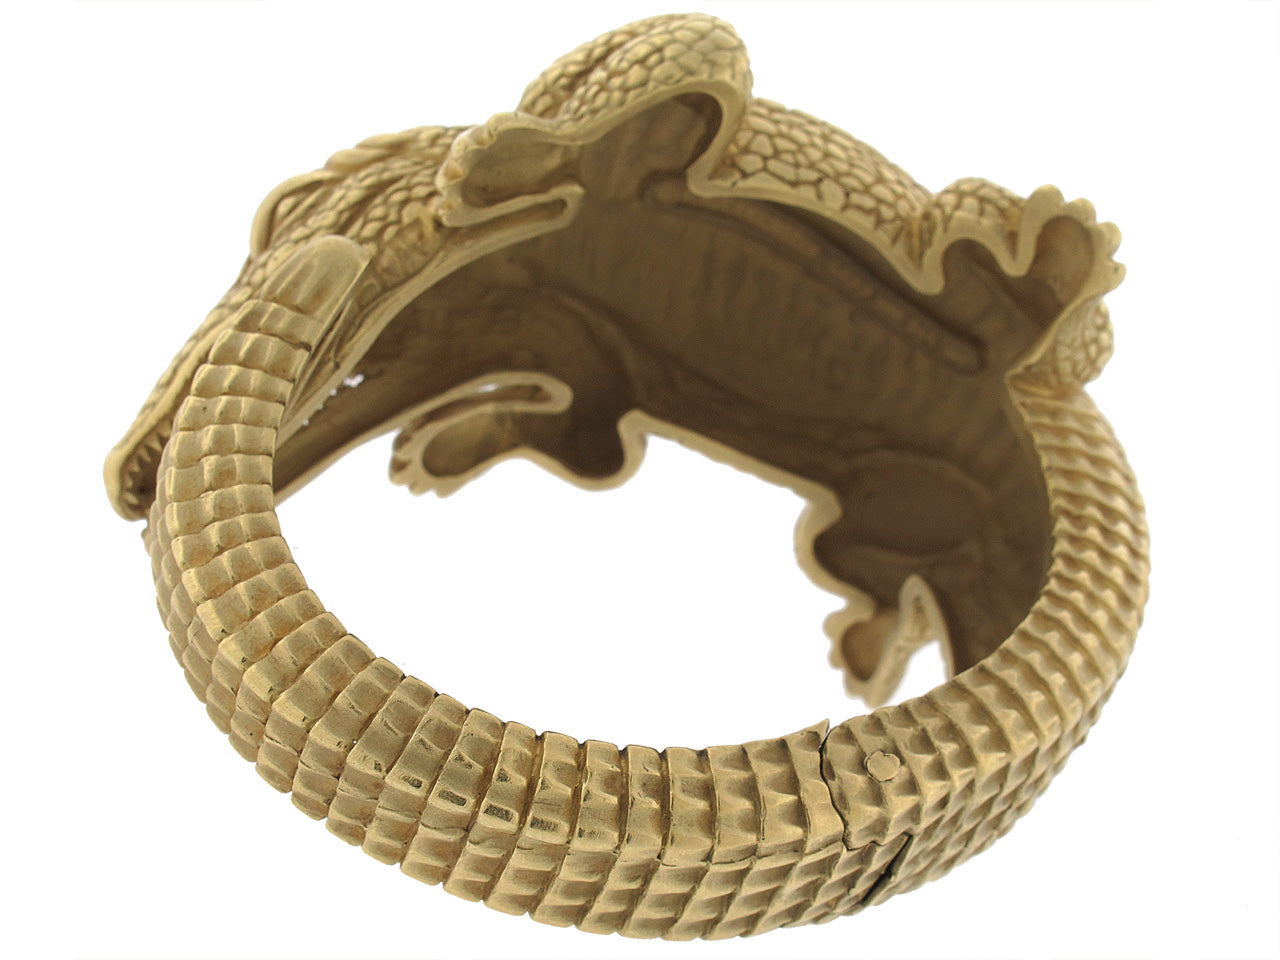 Kieselstein-Cord Alligator Cuff Bracelet in 18K 'Green' Gold, Large